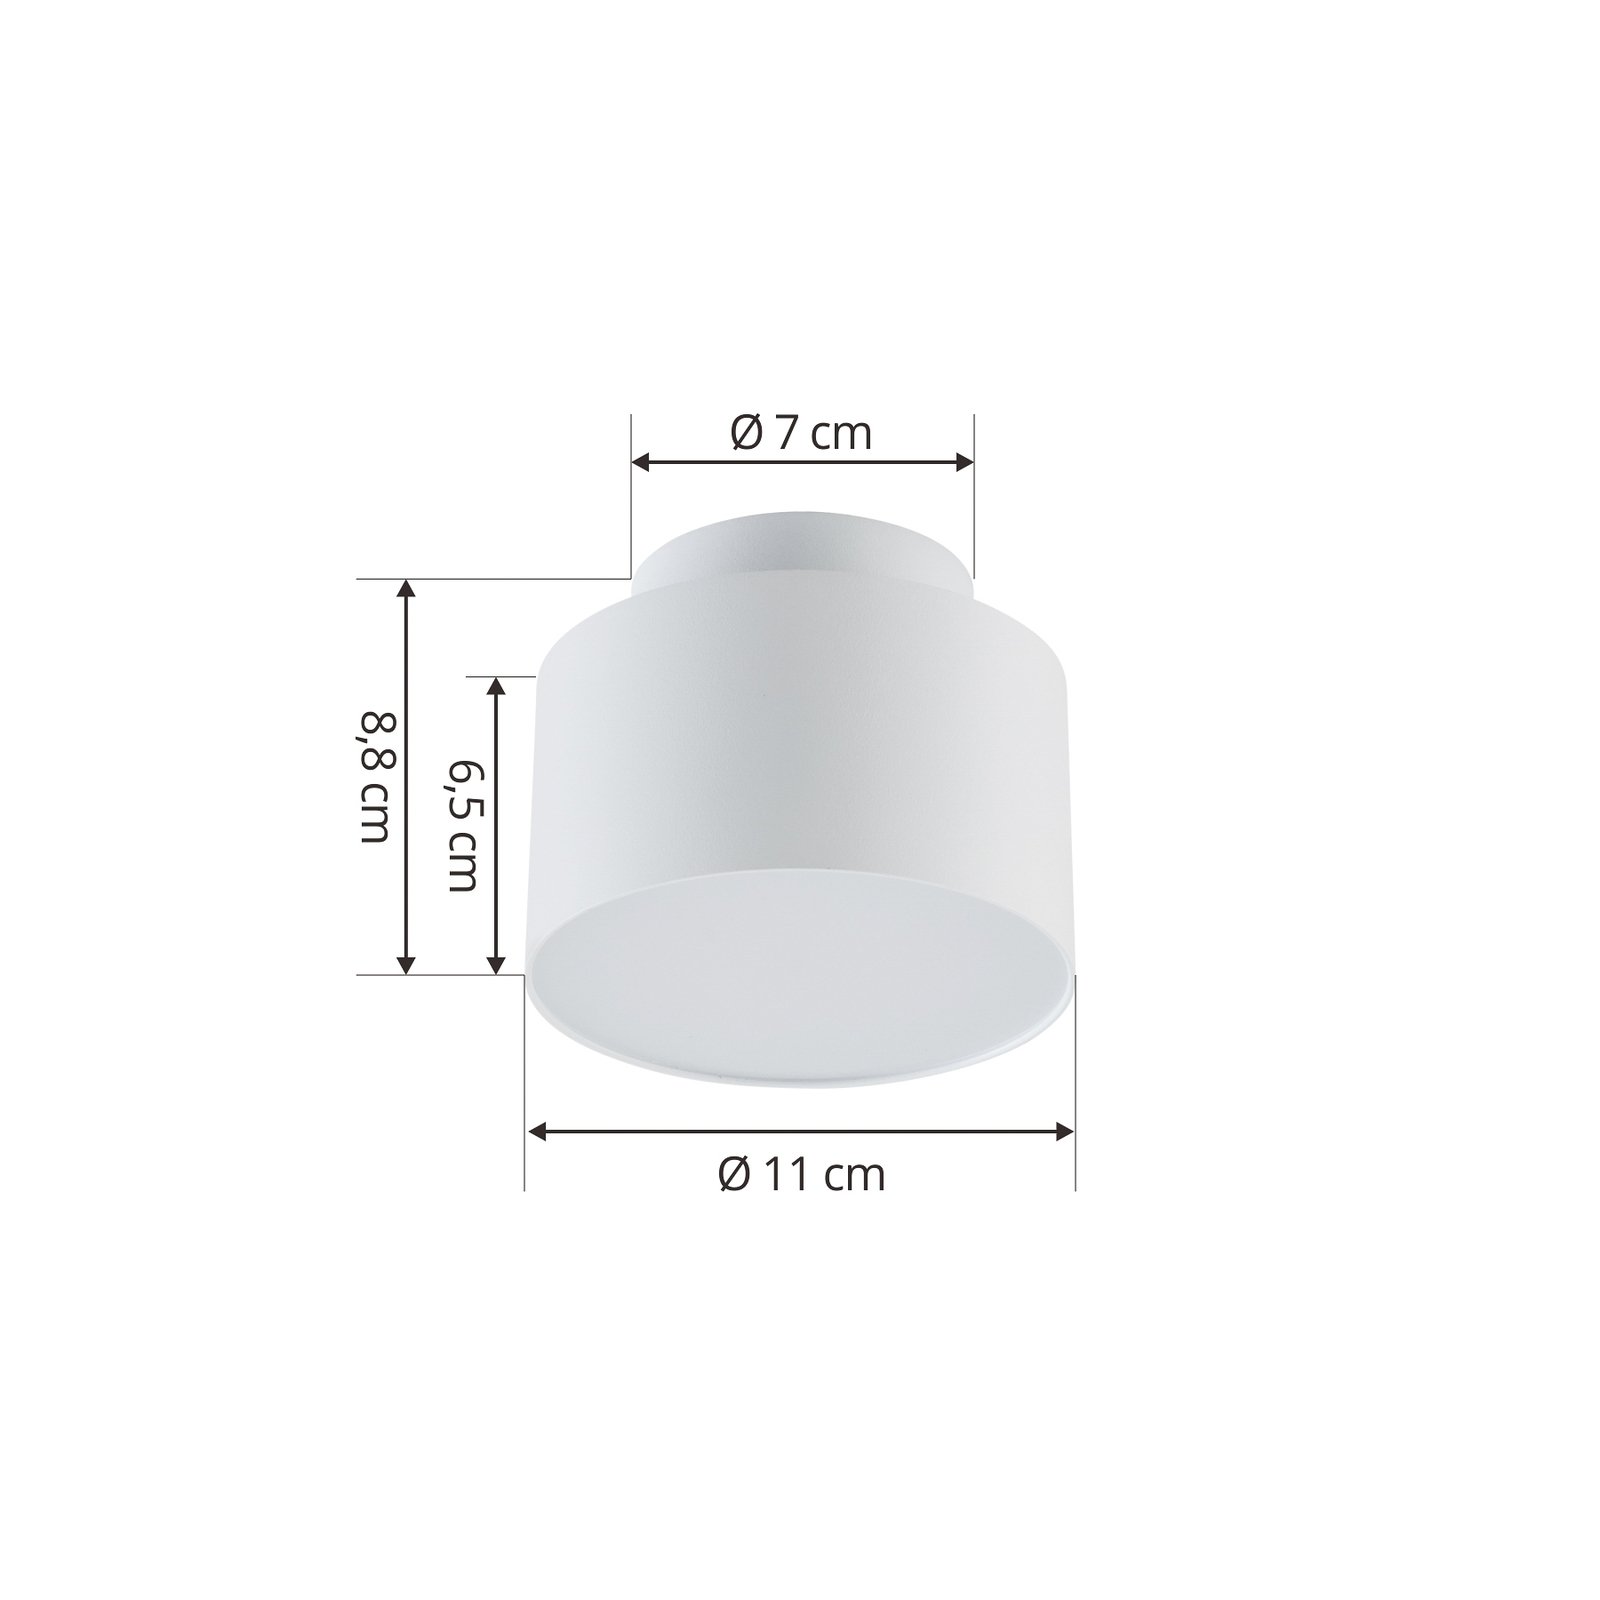 Reflektor LED Lindby Nivoria, Ø 11 cm, biały piaskowy, zestaw 4 sztuk